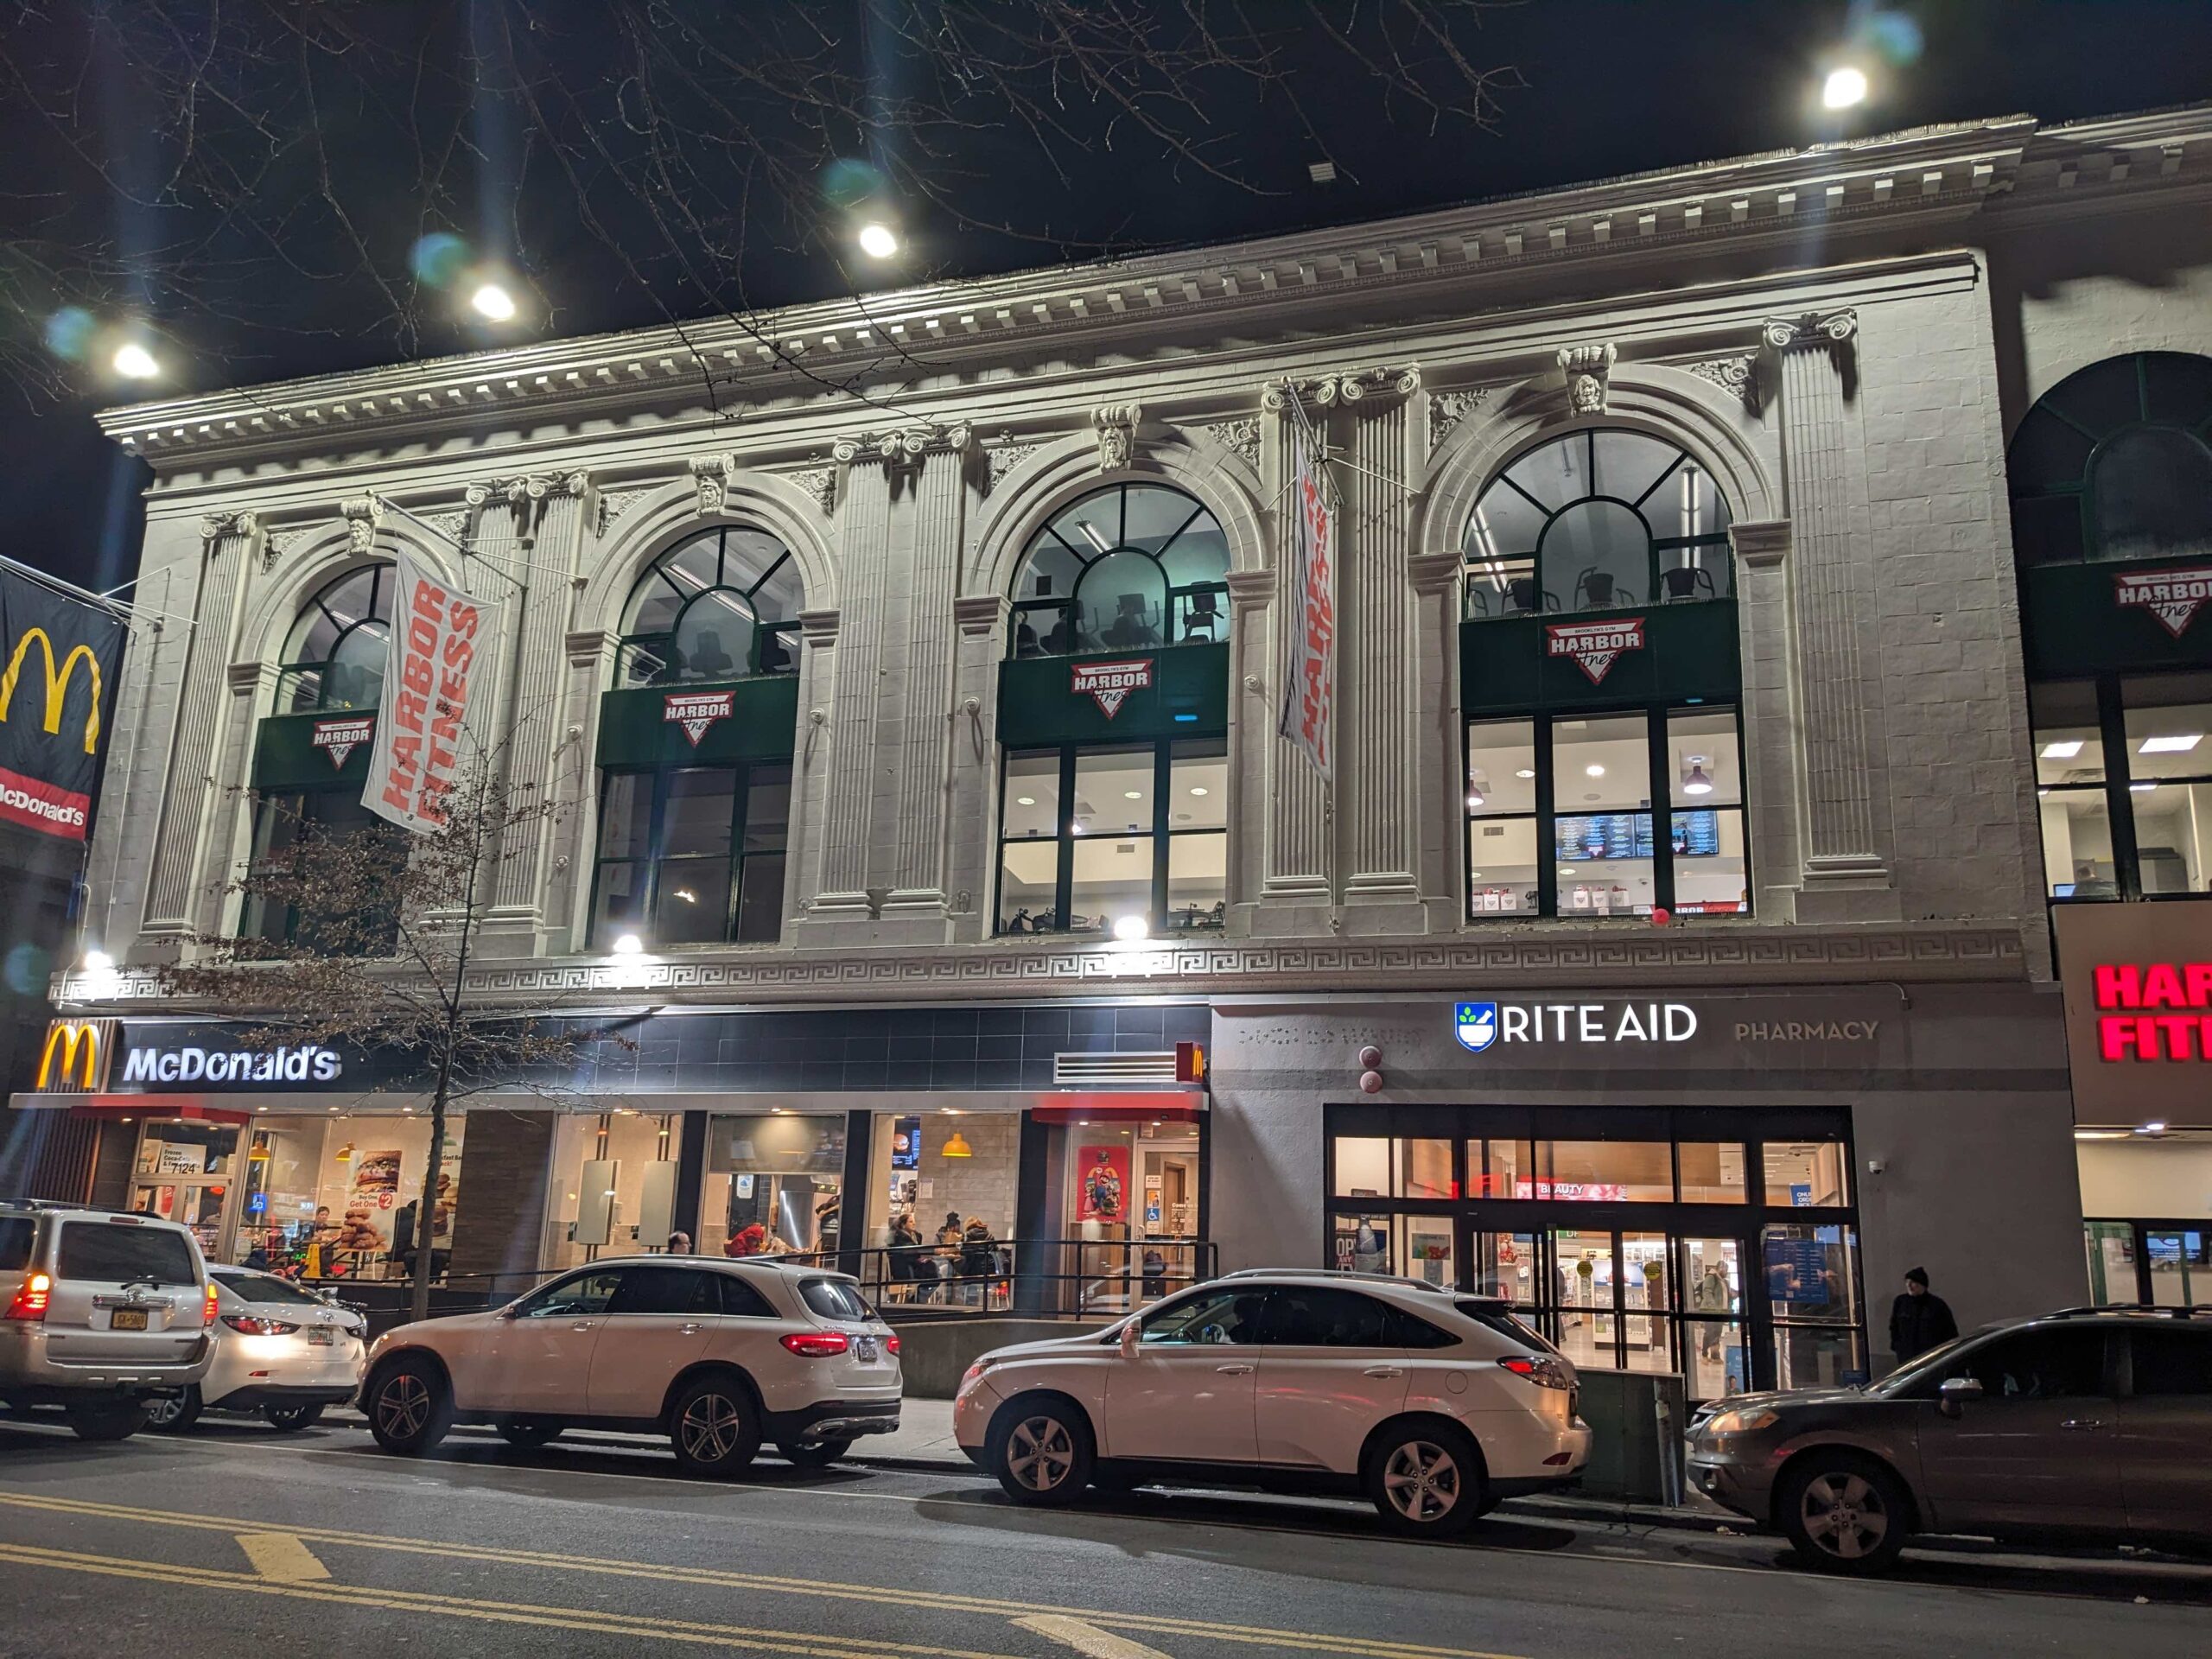 Facade of a former Bay Ridge Theater